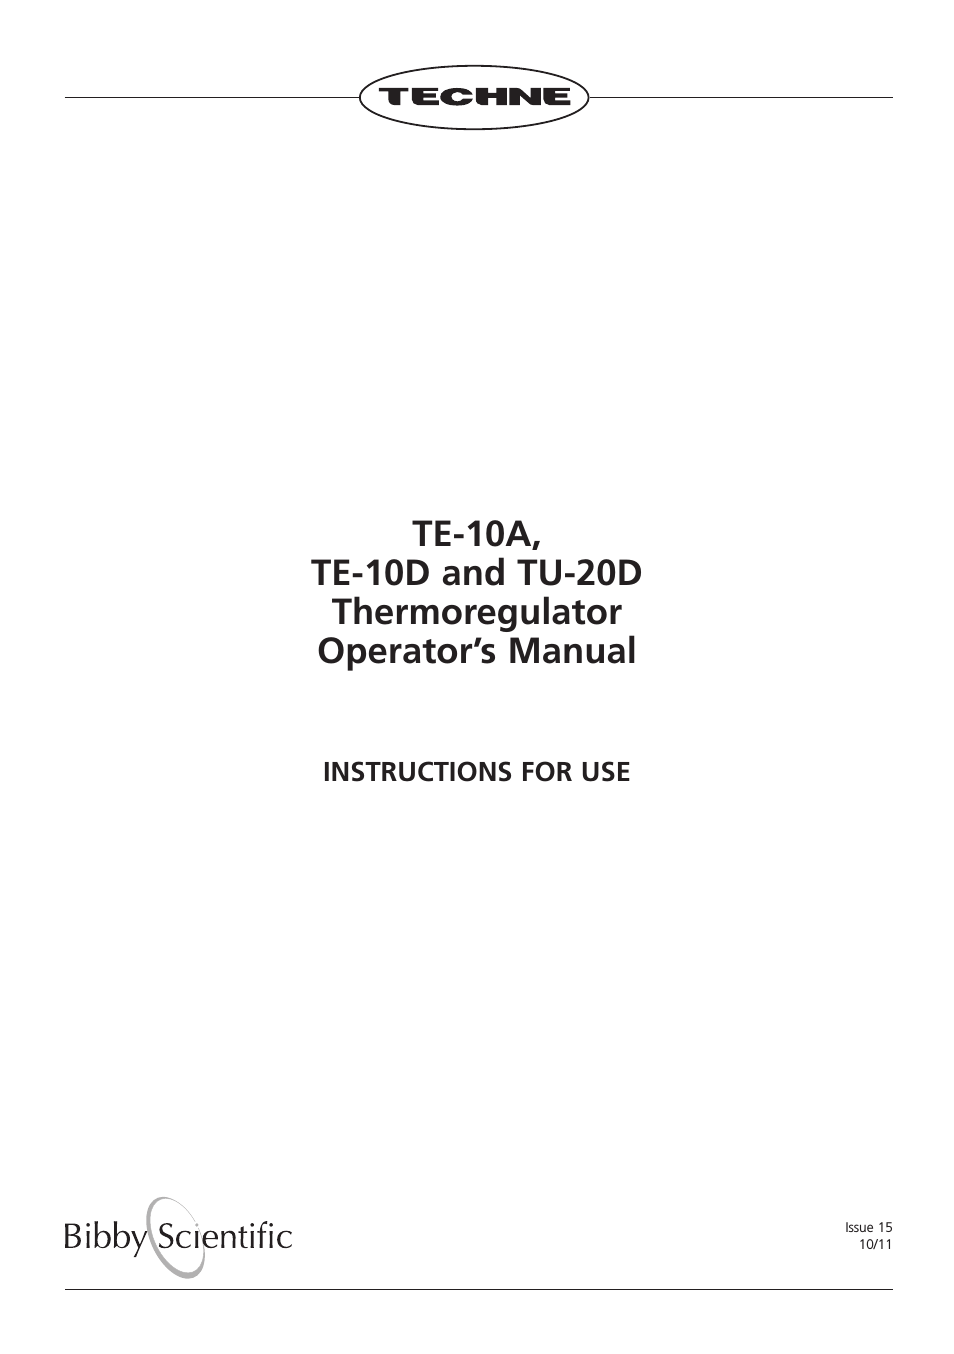 TE-10D